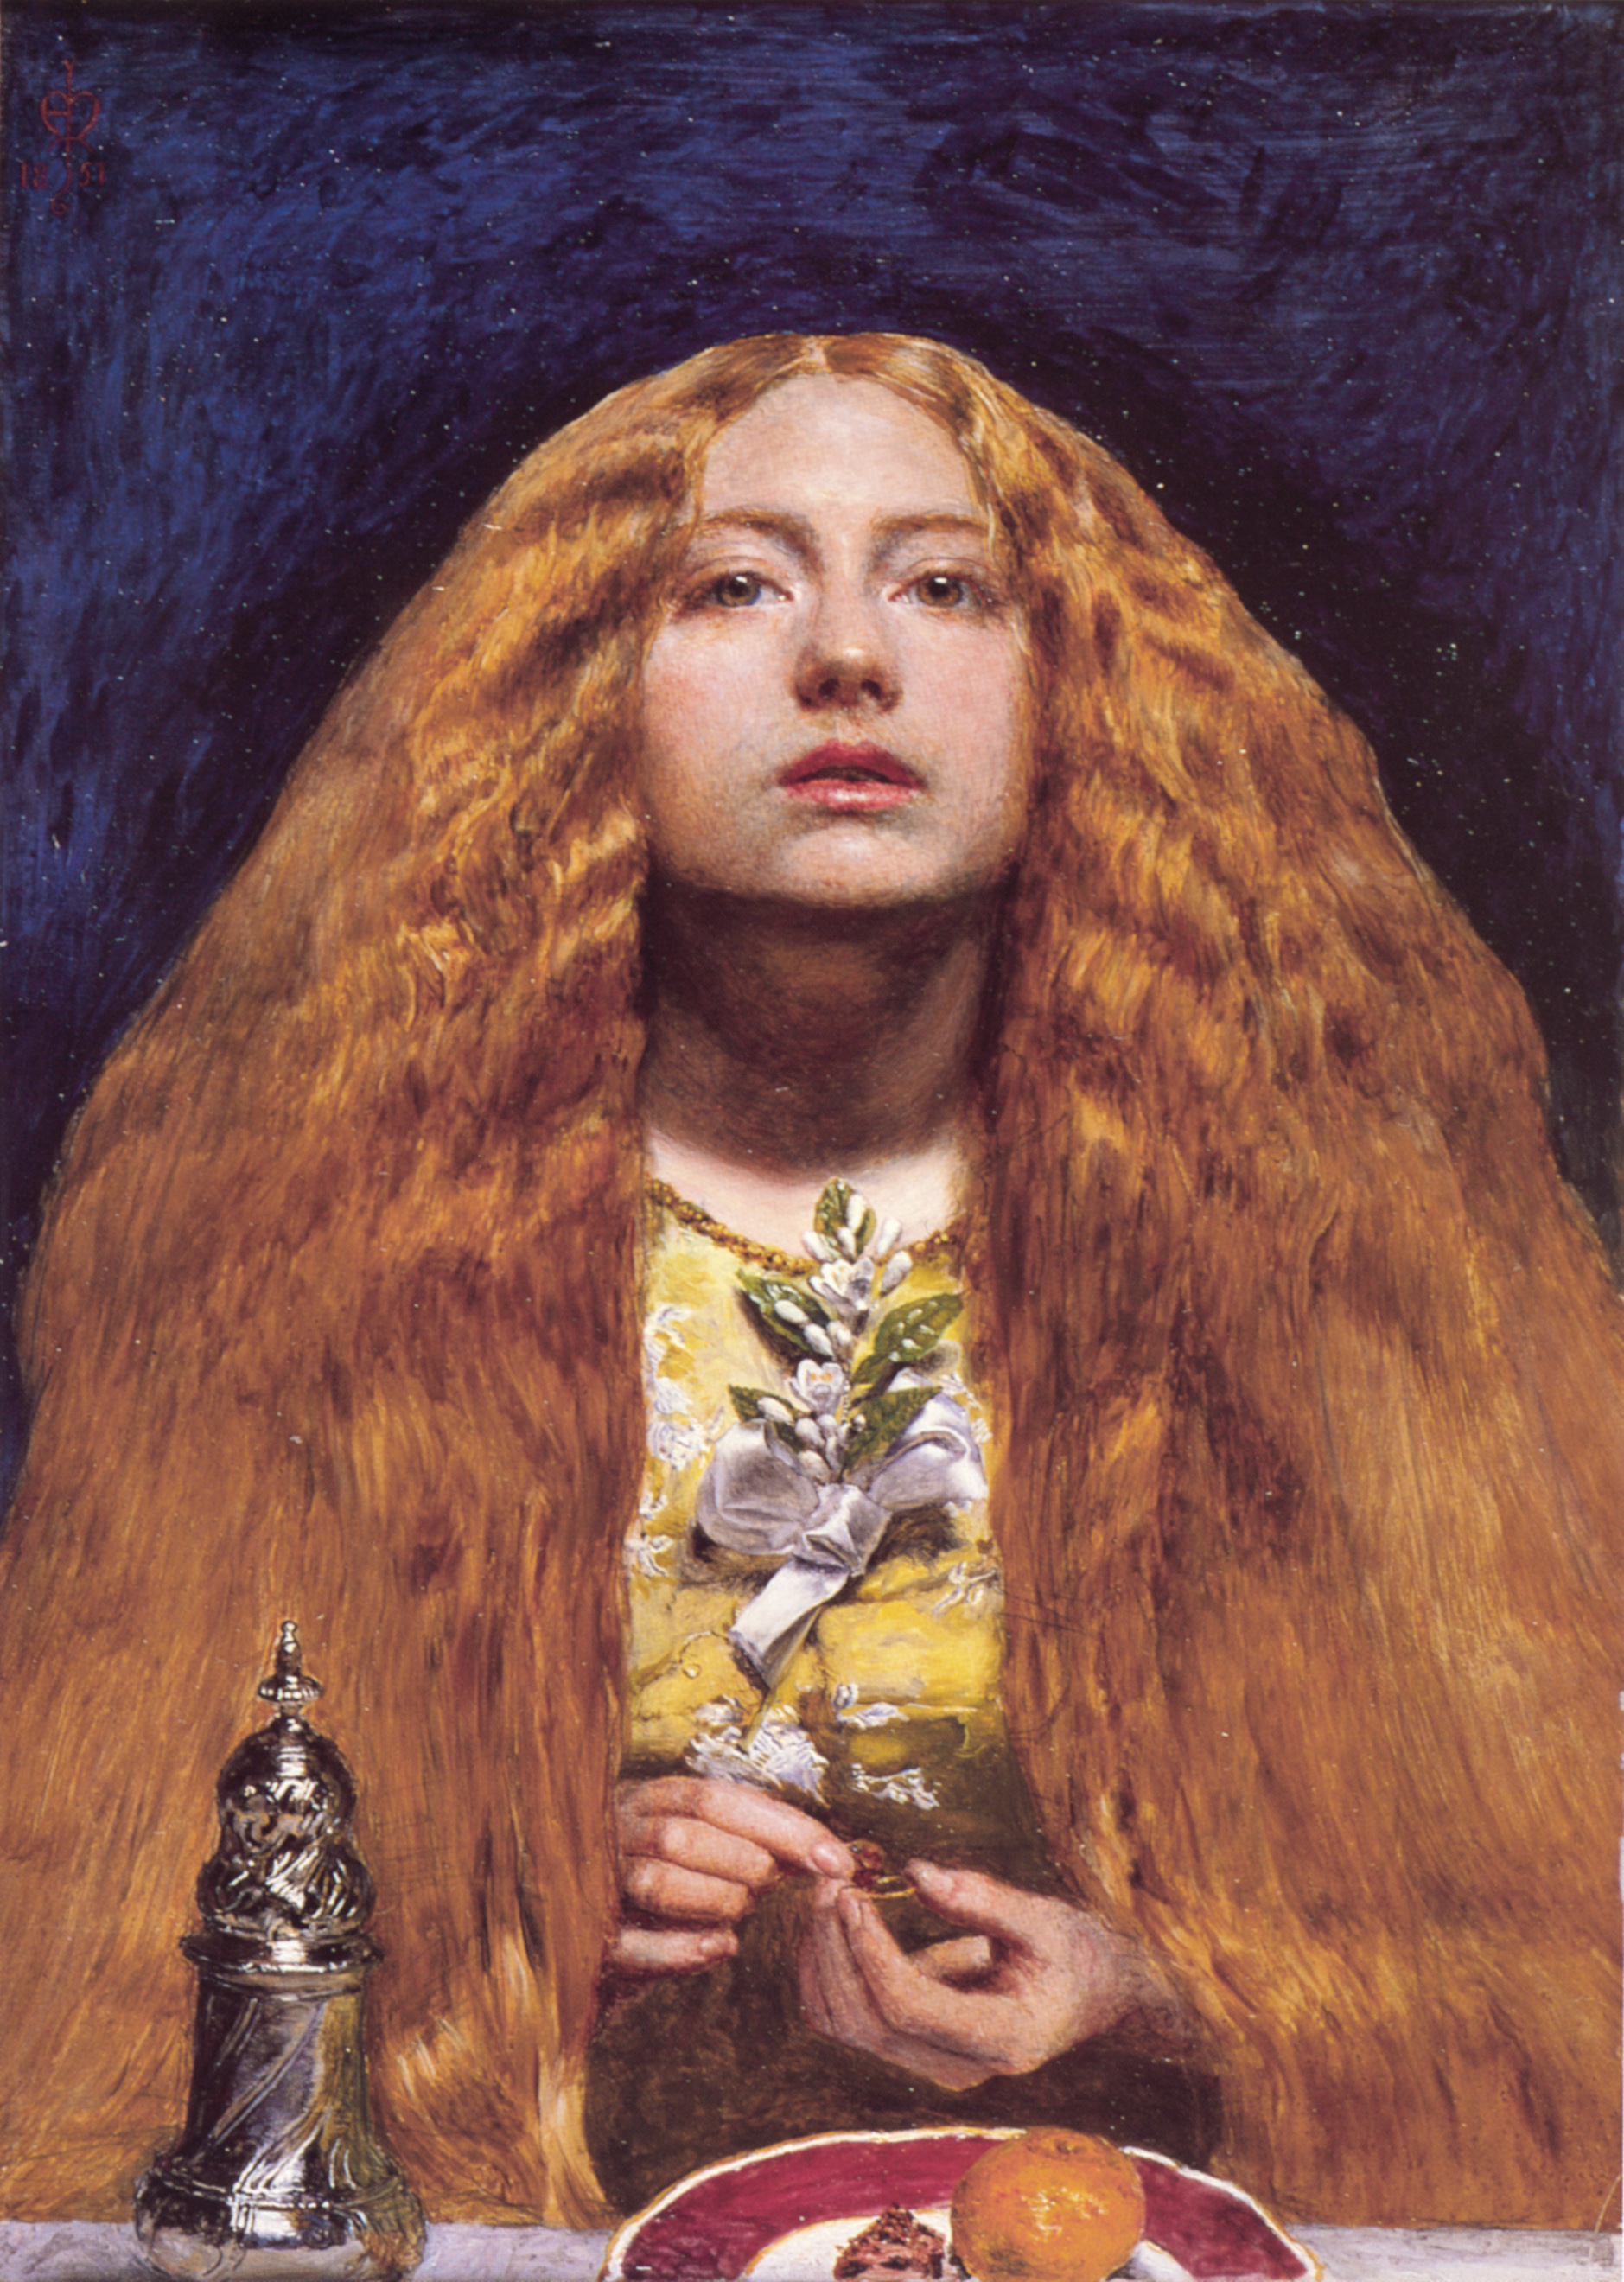 La dama de honor by John Everett Millais - 1851 - 20.3 x 27.9 cm Museo Fitzwilliam